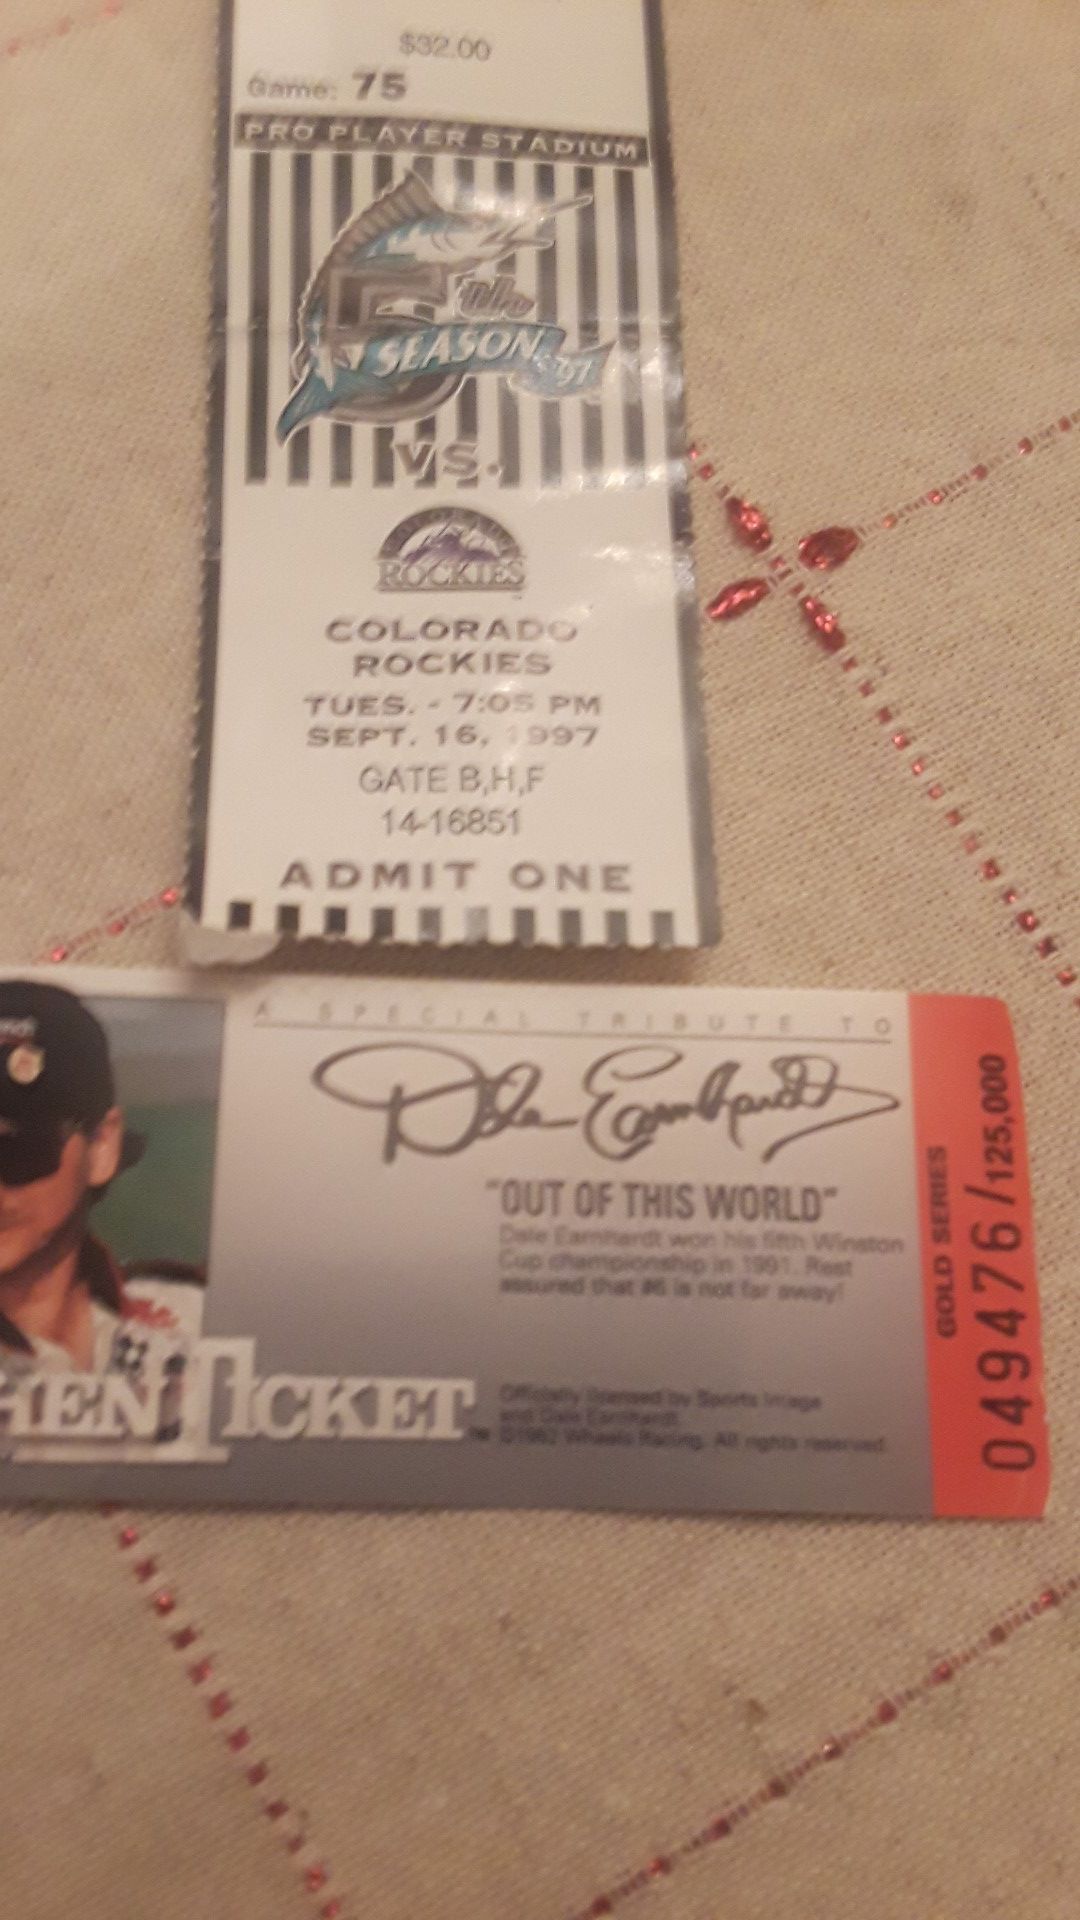 Tickets. Marlins vs Rockies 9/16/97 + Dale Earnhardt ticket